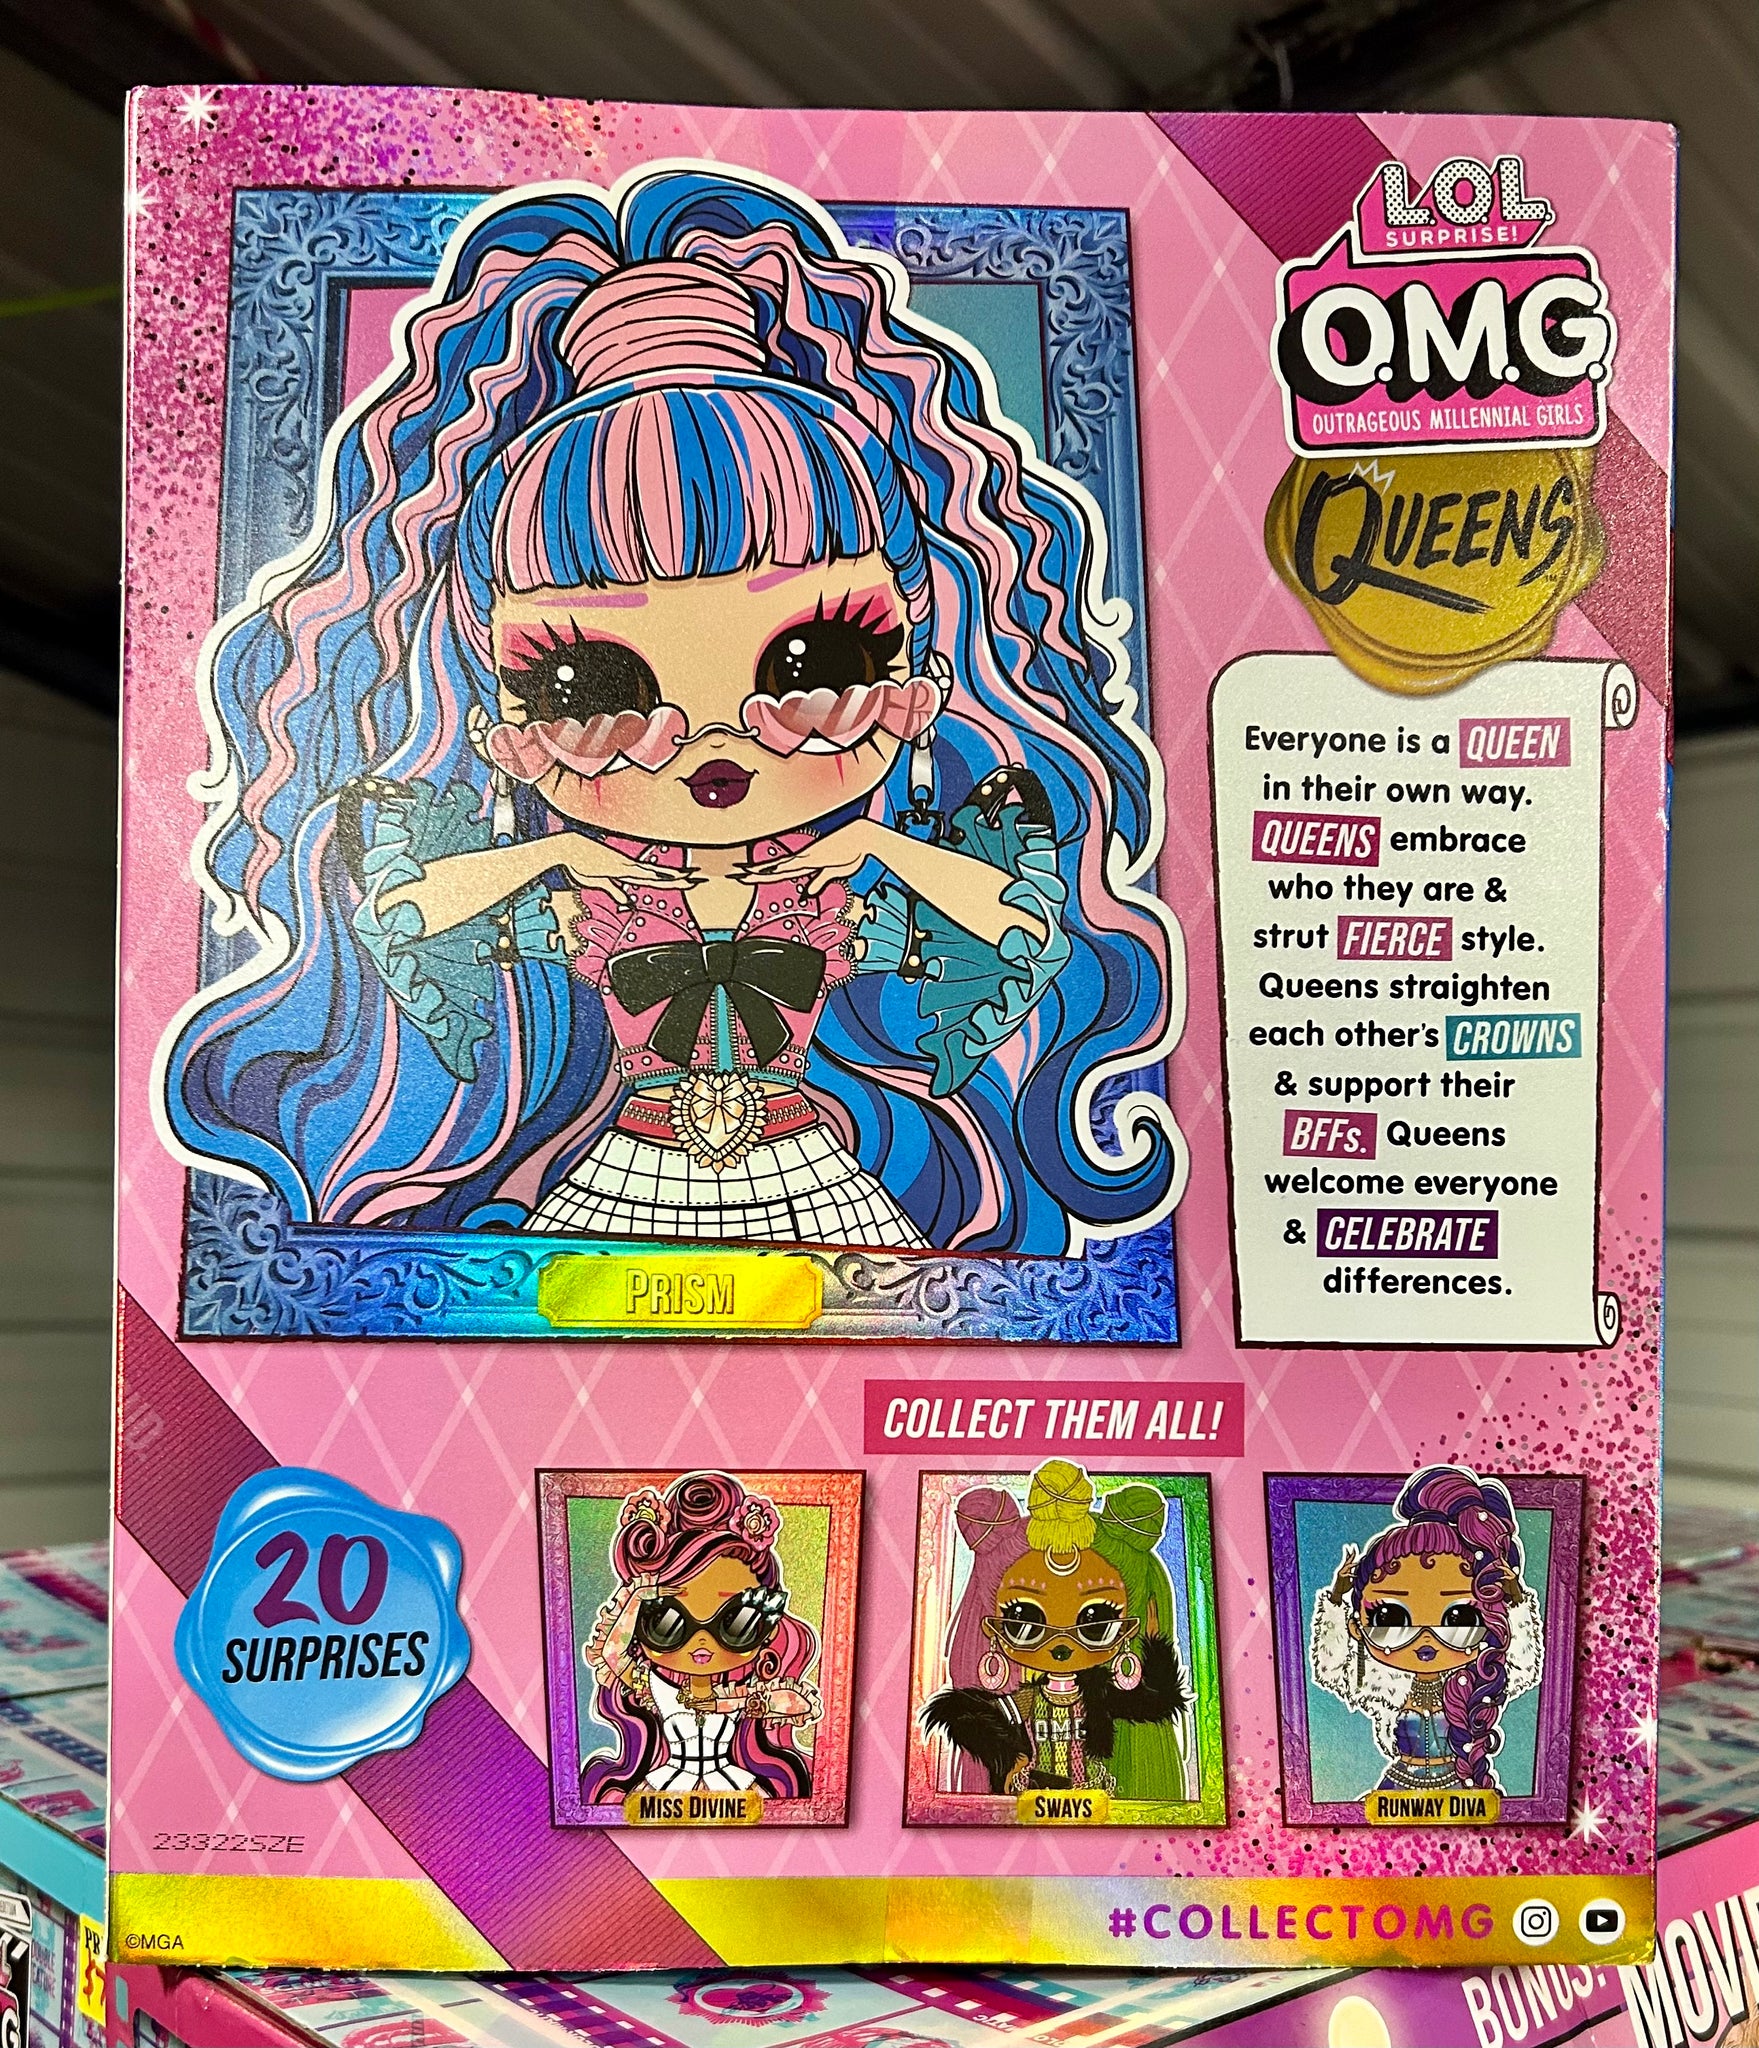 OMG Queens Prism Fashion Doll 20 Surprises – L.O.L. Surprise! Official Store